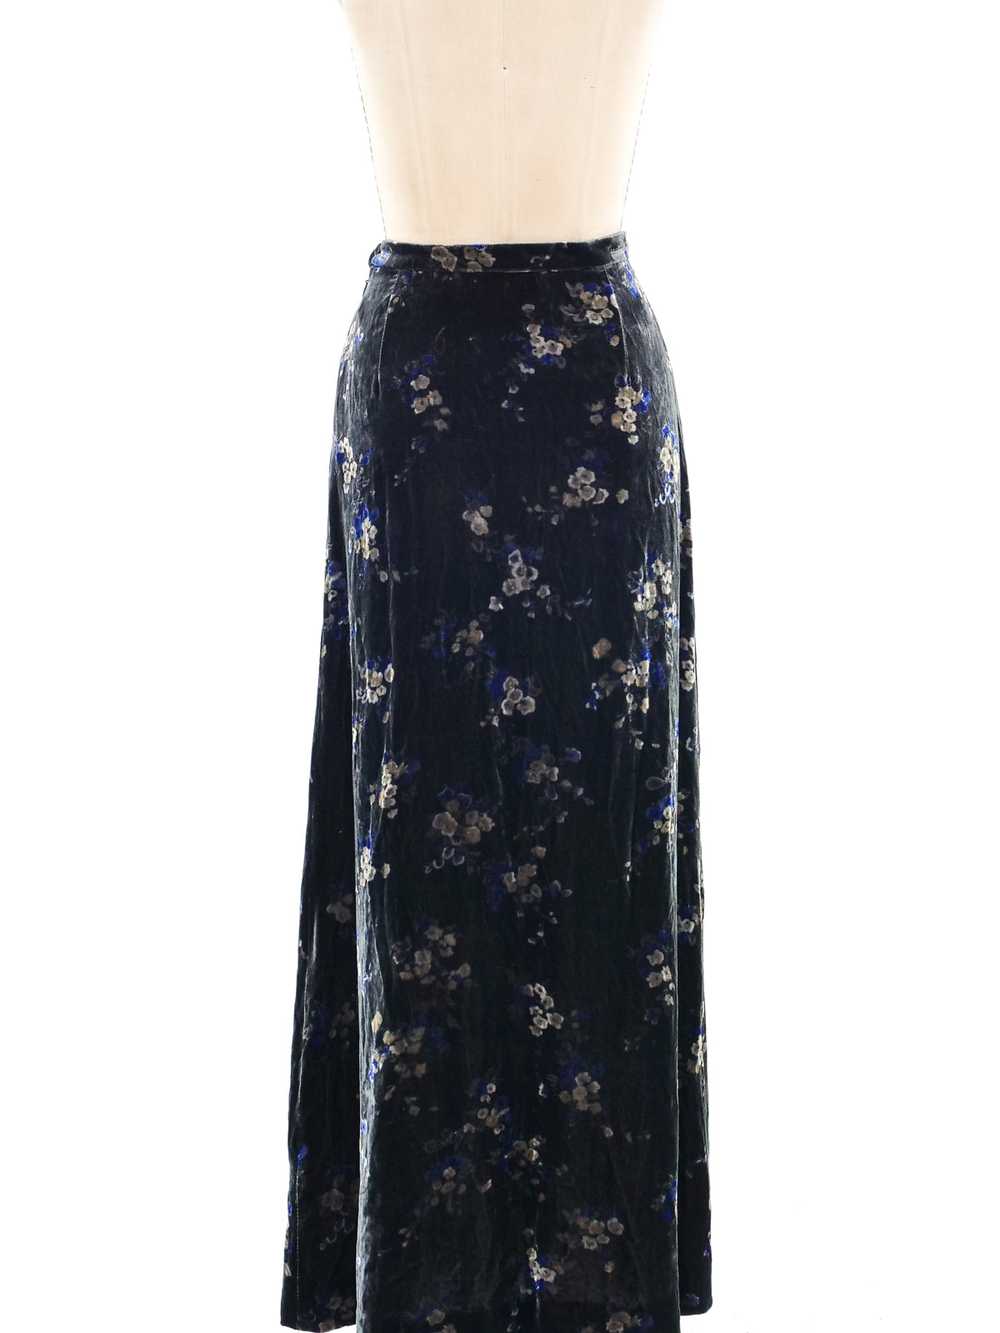 Ungaro Floral Velvet Skirt - image 3